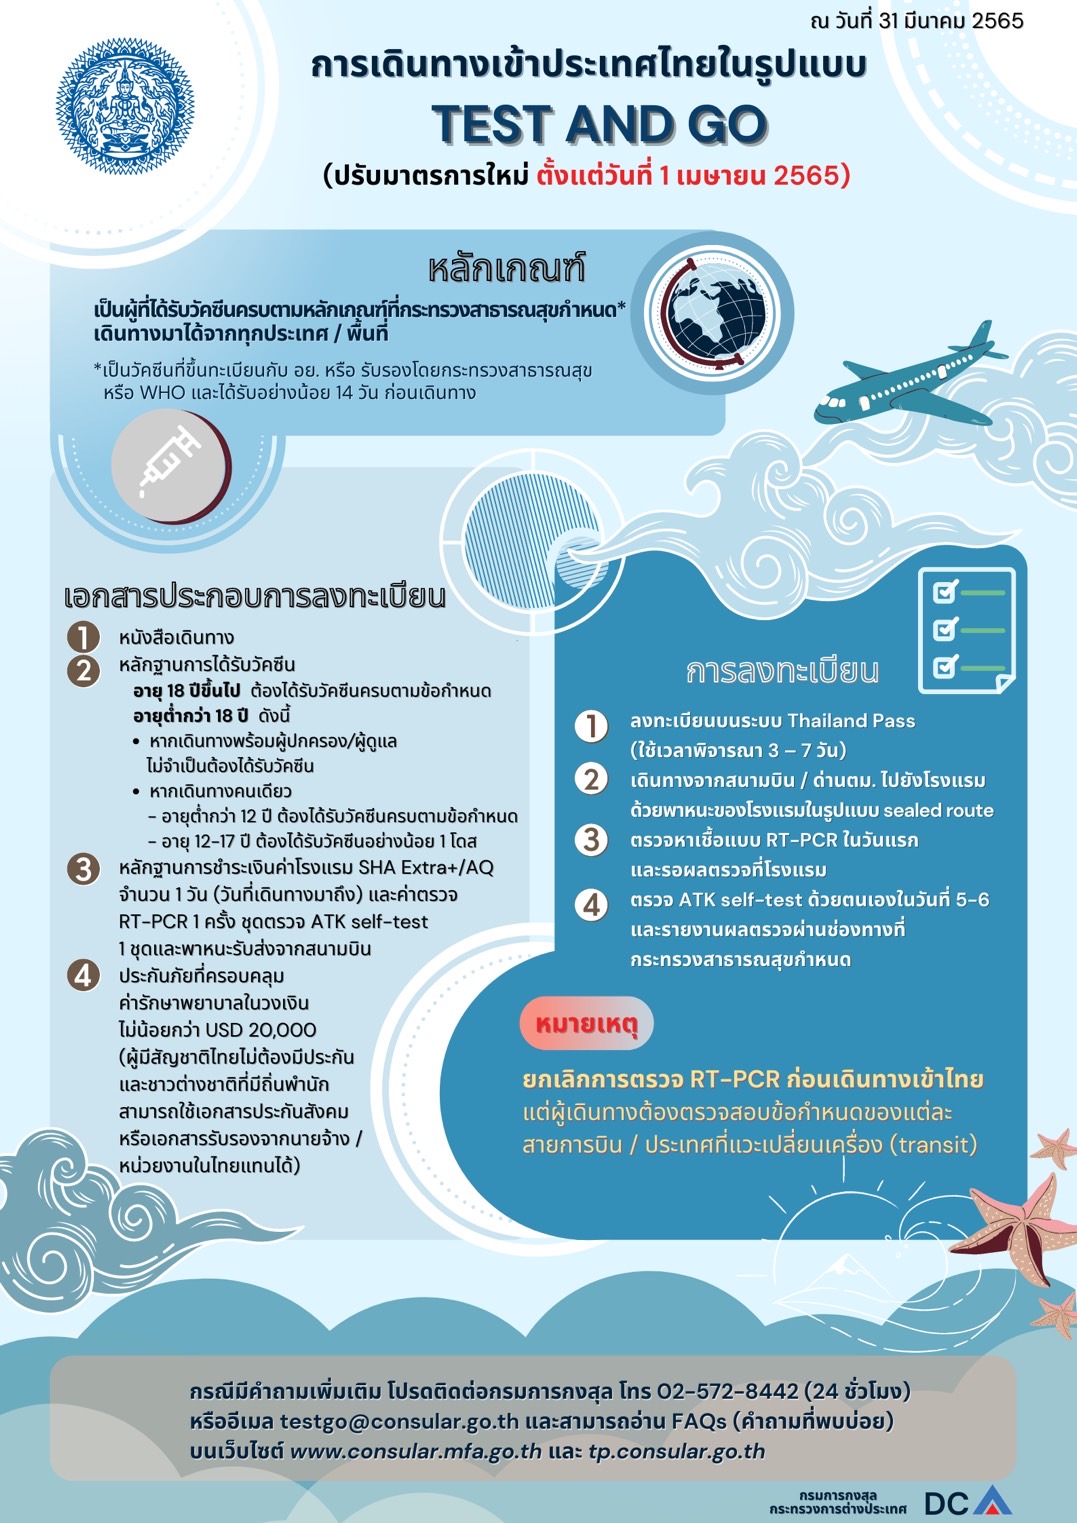 มาตรการเดินทางเข้าประเทศไทย ตั้งแต่วันที่ 1 เมษายน 2565 - สถานกงสุลใหญ่